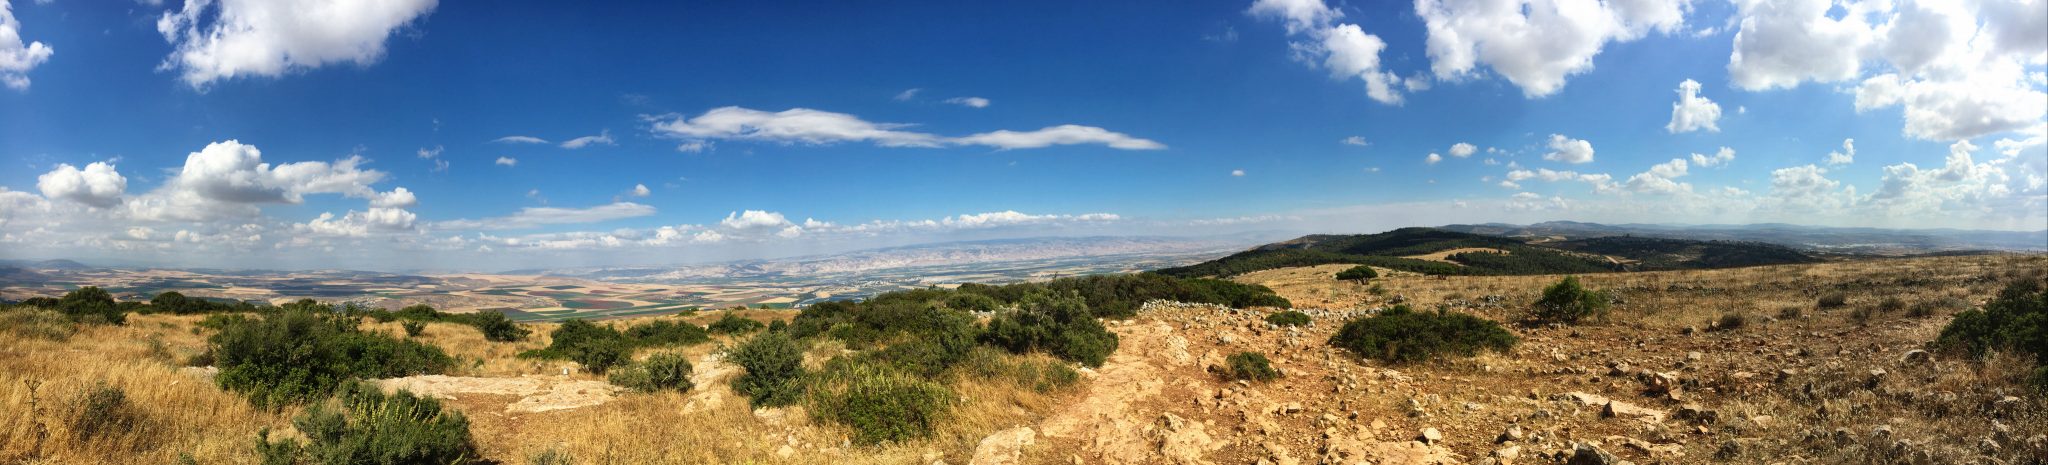 Gilboa Panorama View